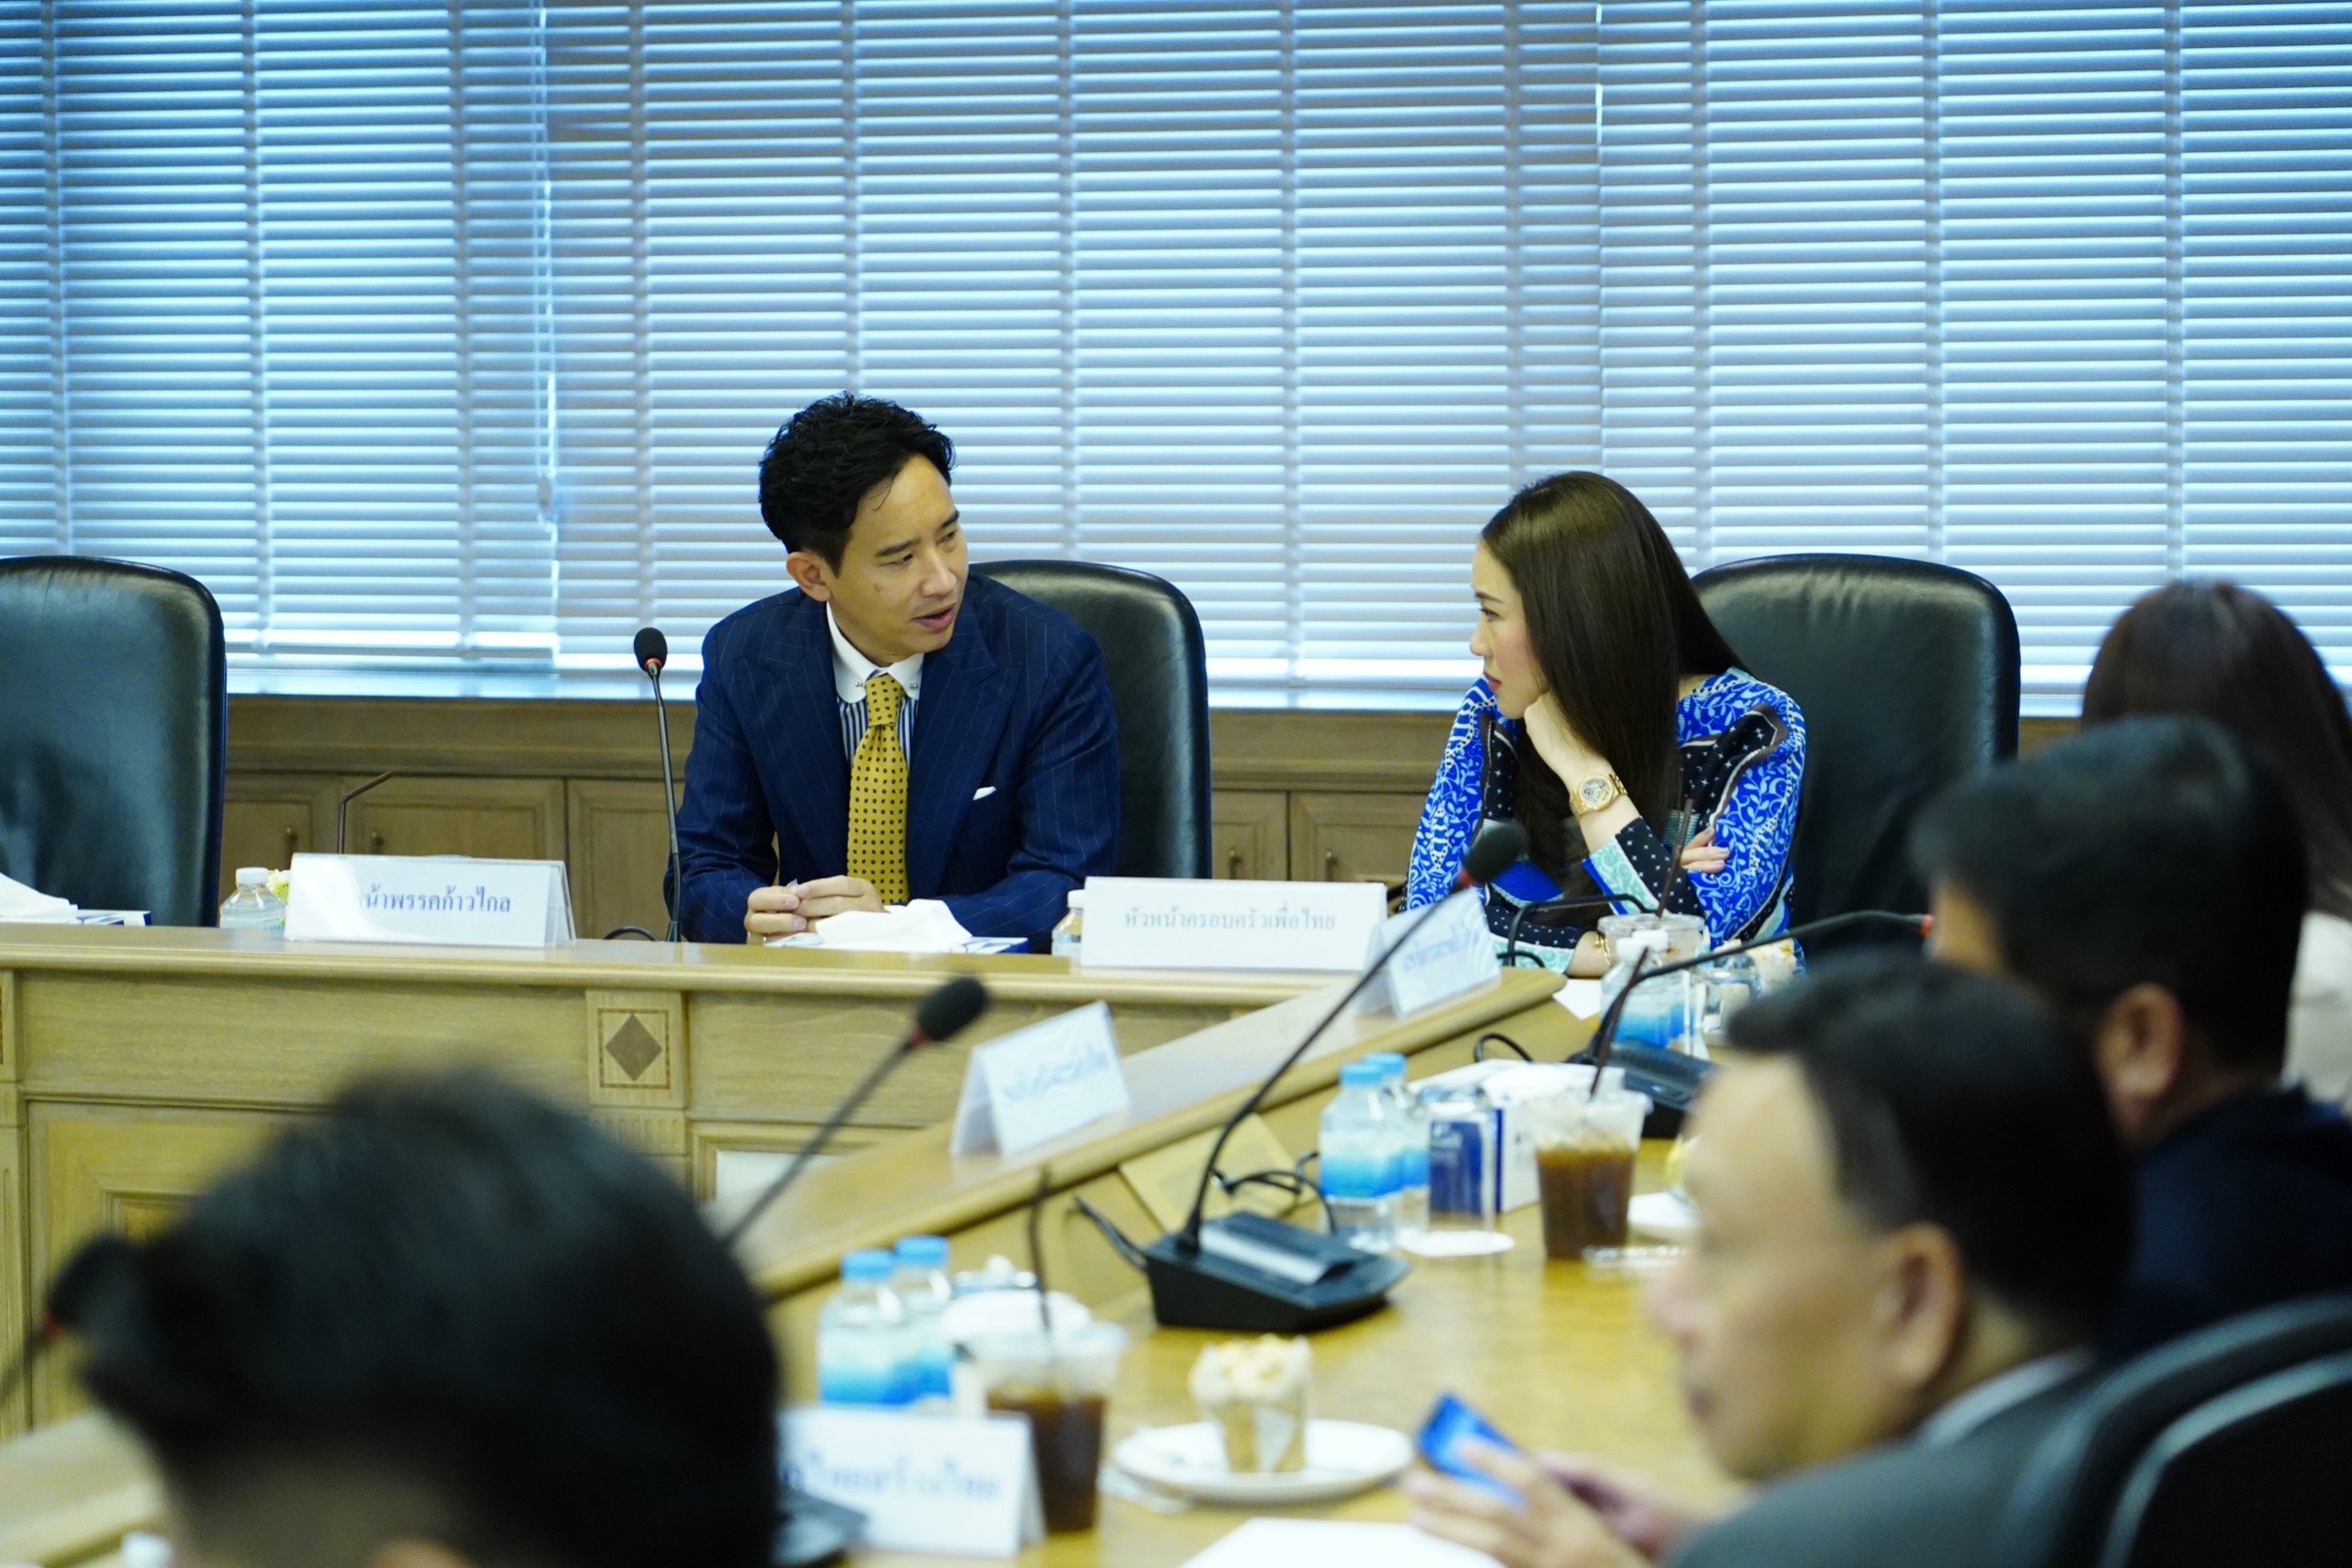 8 พรรค ร่วมประชุมจัดตั้งรัฐบาลครั้งที่ 2 ณ พรรคเพื่อไทย  เชื่อไม่มีปัญหาปมหุ้นไอทีวี